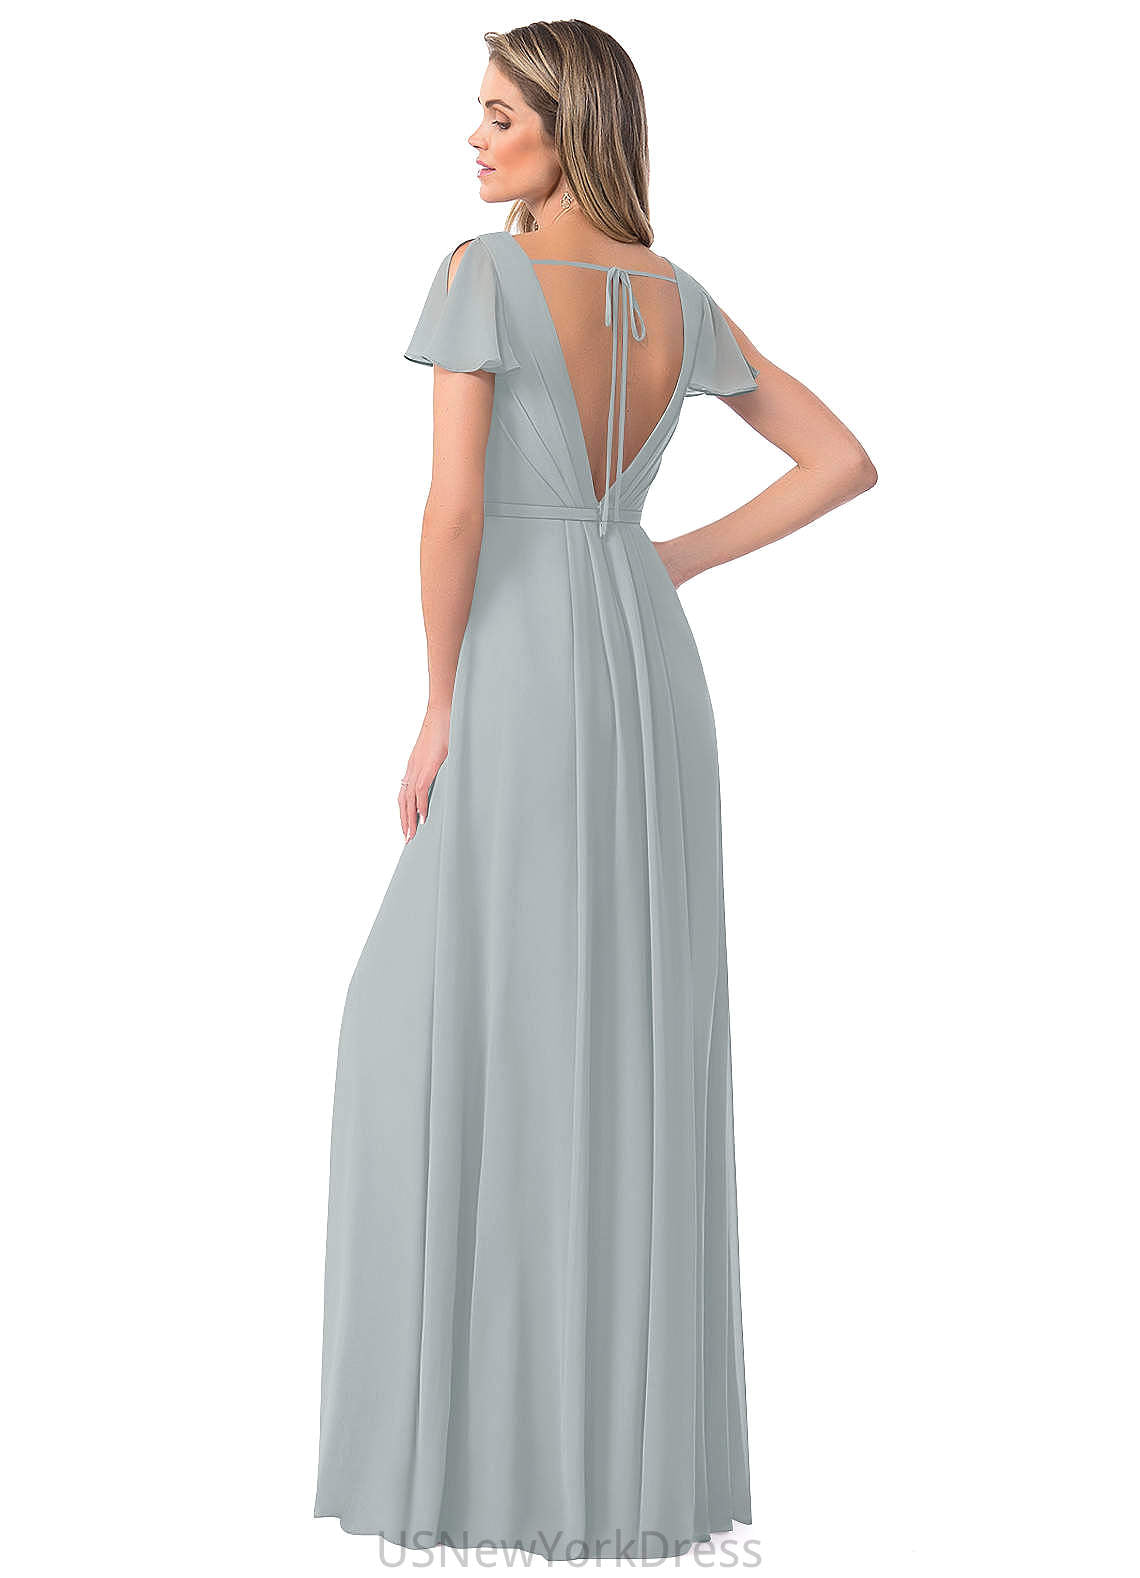 Savanna Straps Trumpet/Mermaid Natural Waist Floor Length Sleeveless Bridesmaid Dresses